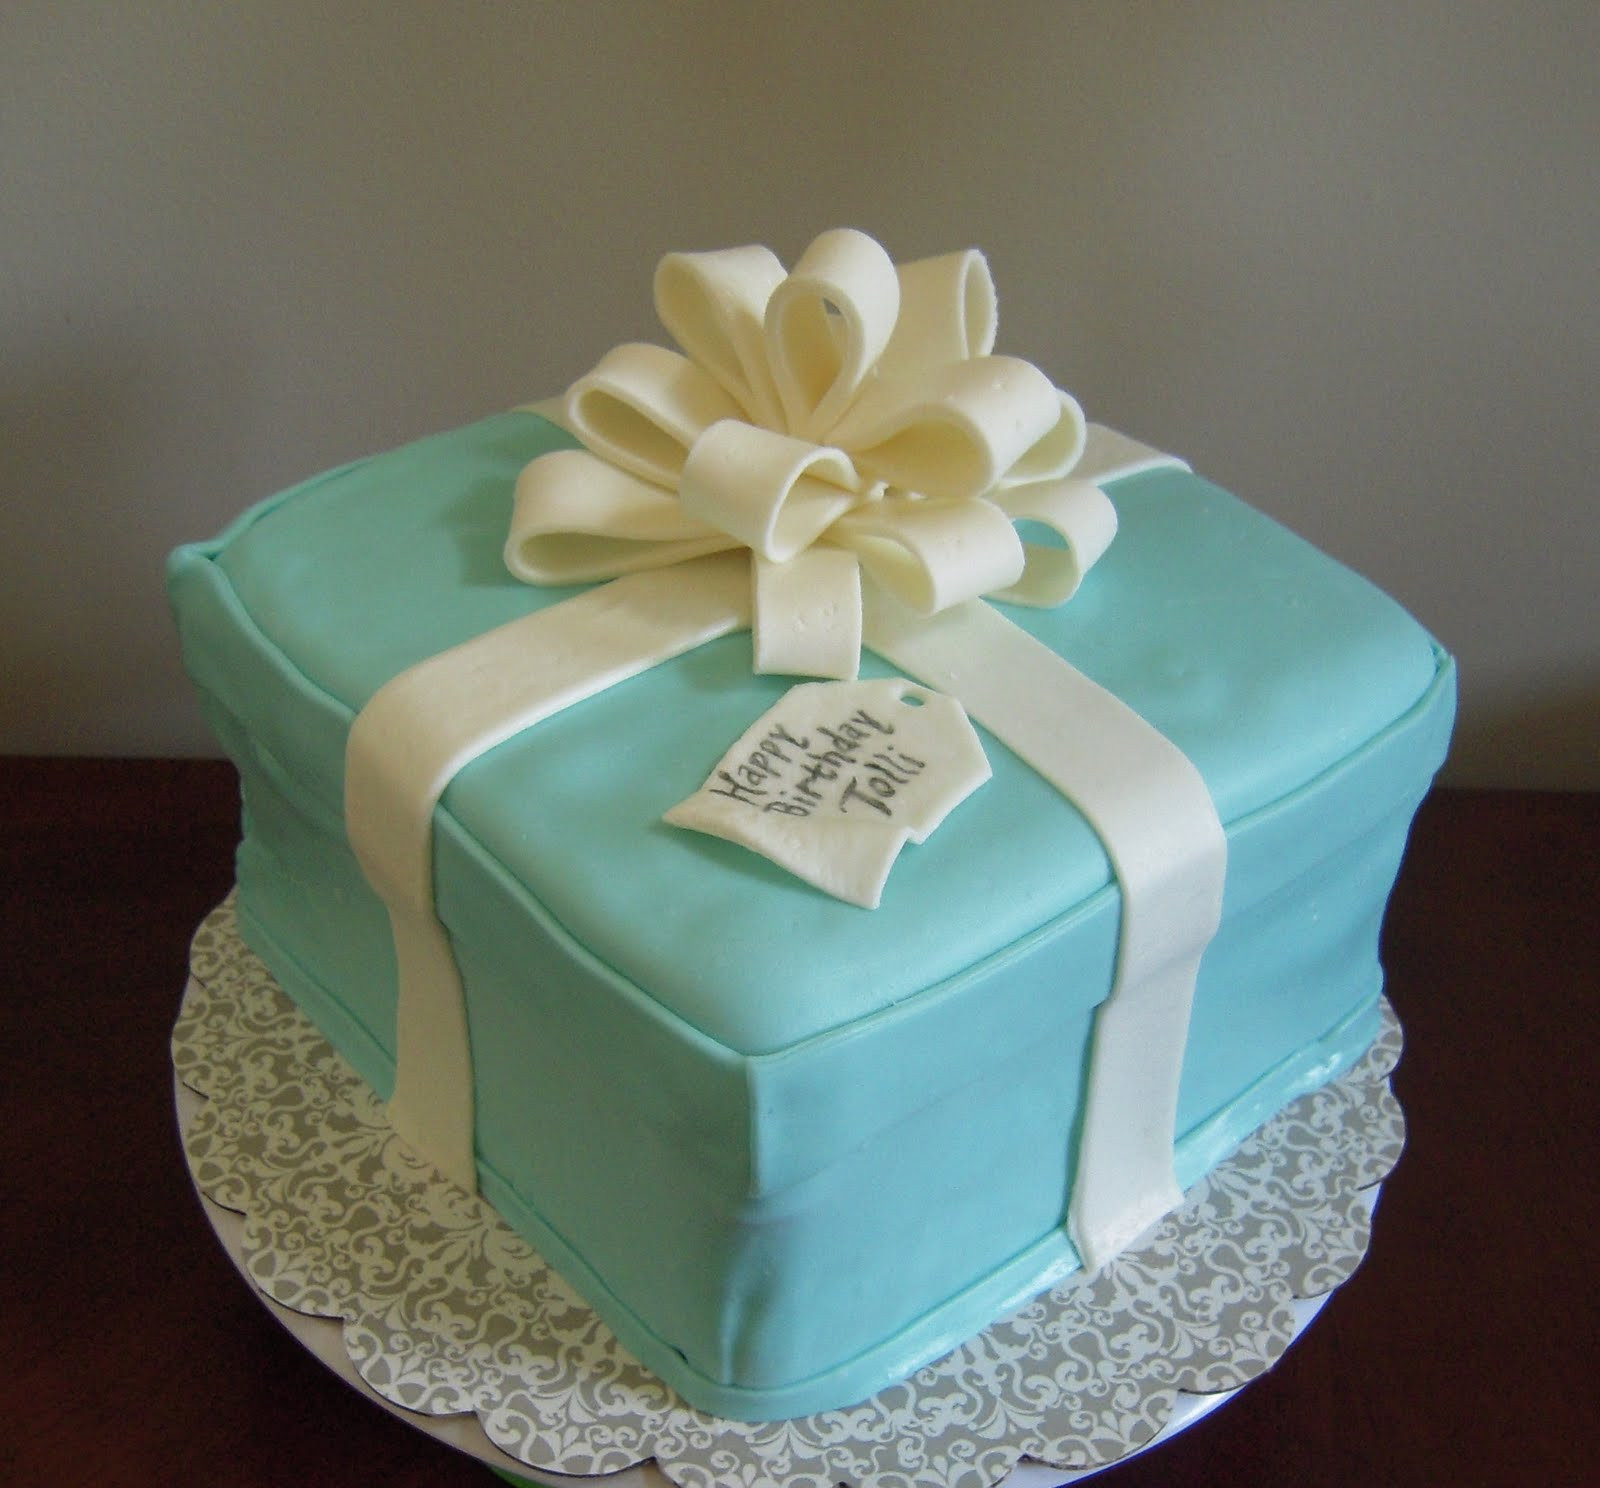 Happy Birthday Tiffany Cake
 Icing Makes the Cake Tiffany & Co Cake